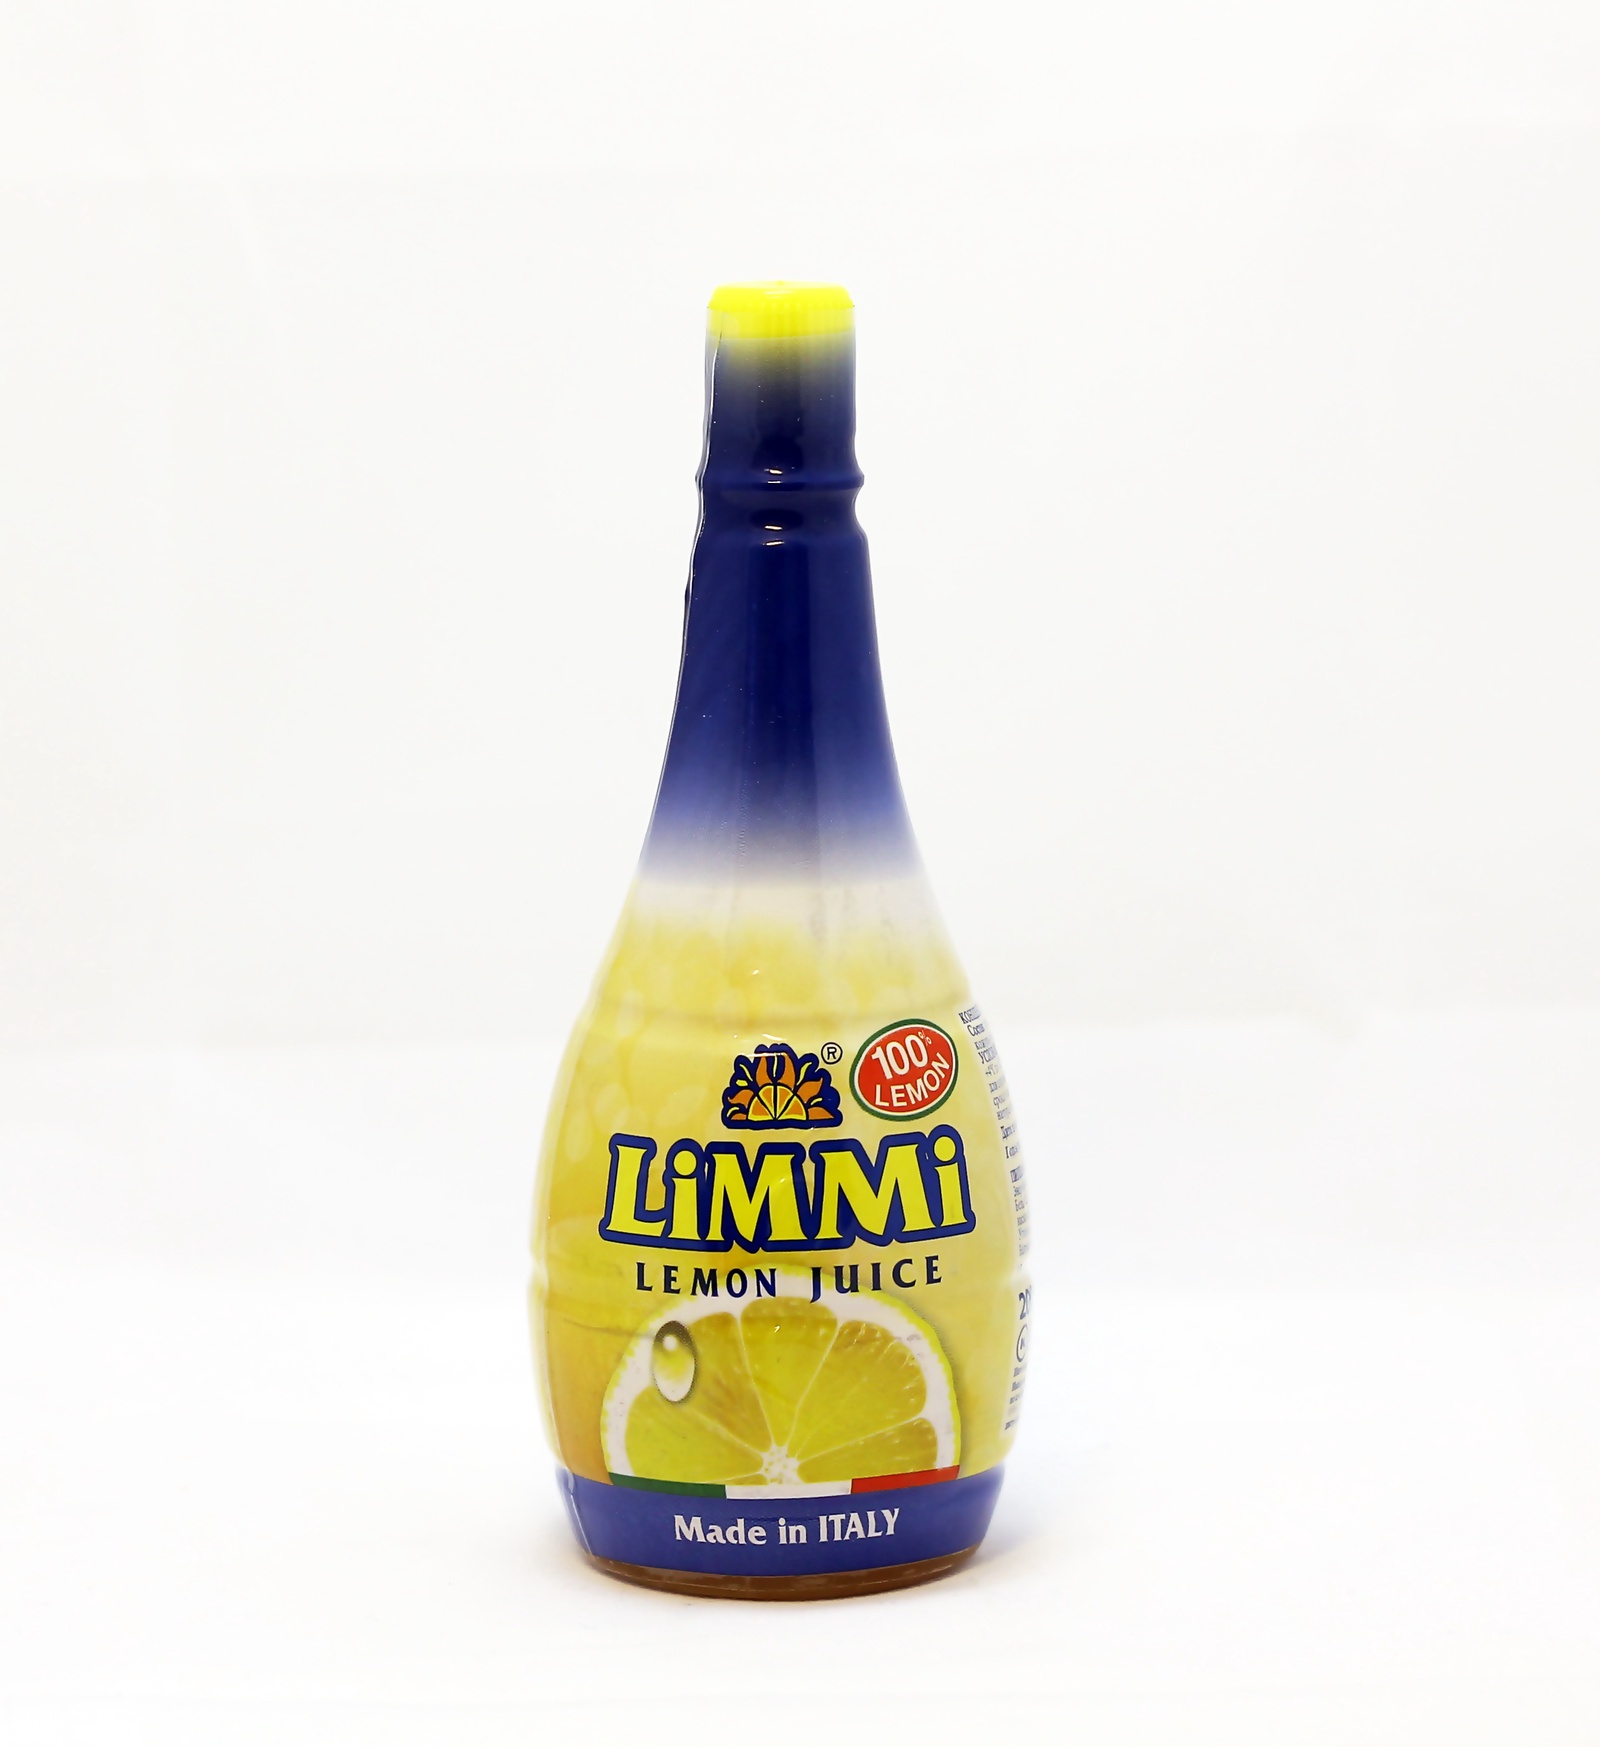 Сок лимона отзывы. Сок Condy лимонный, концентрированный, 200 мл. Лимонный сок limmi. TRS сок лимона 250 мл. Концентрат лимонного сока.